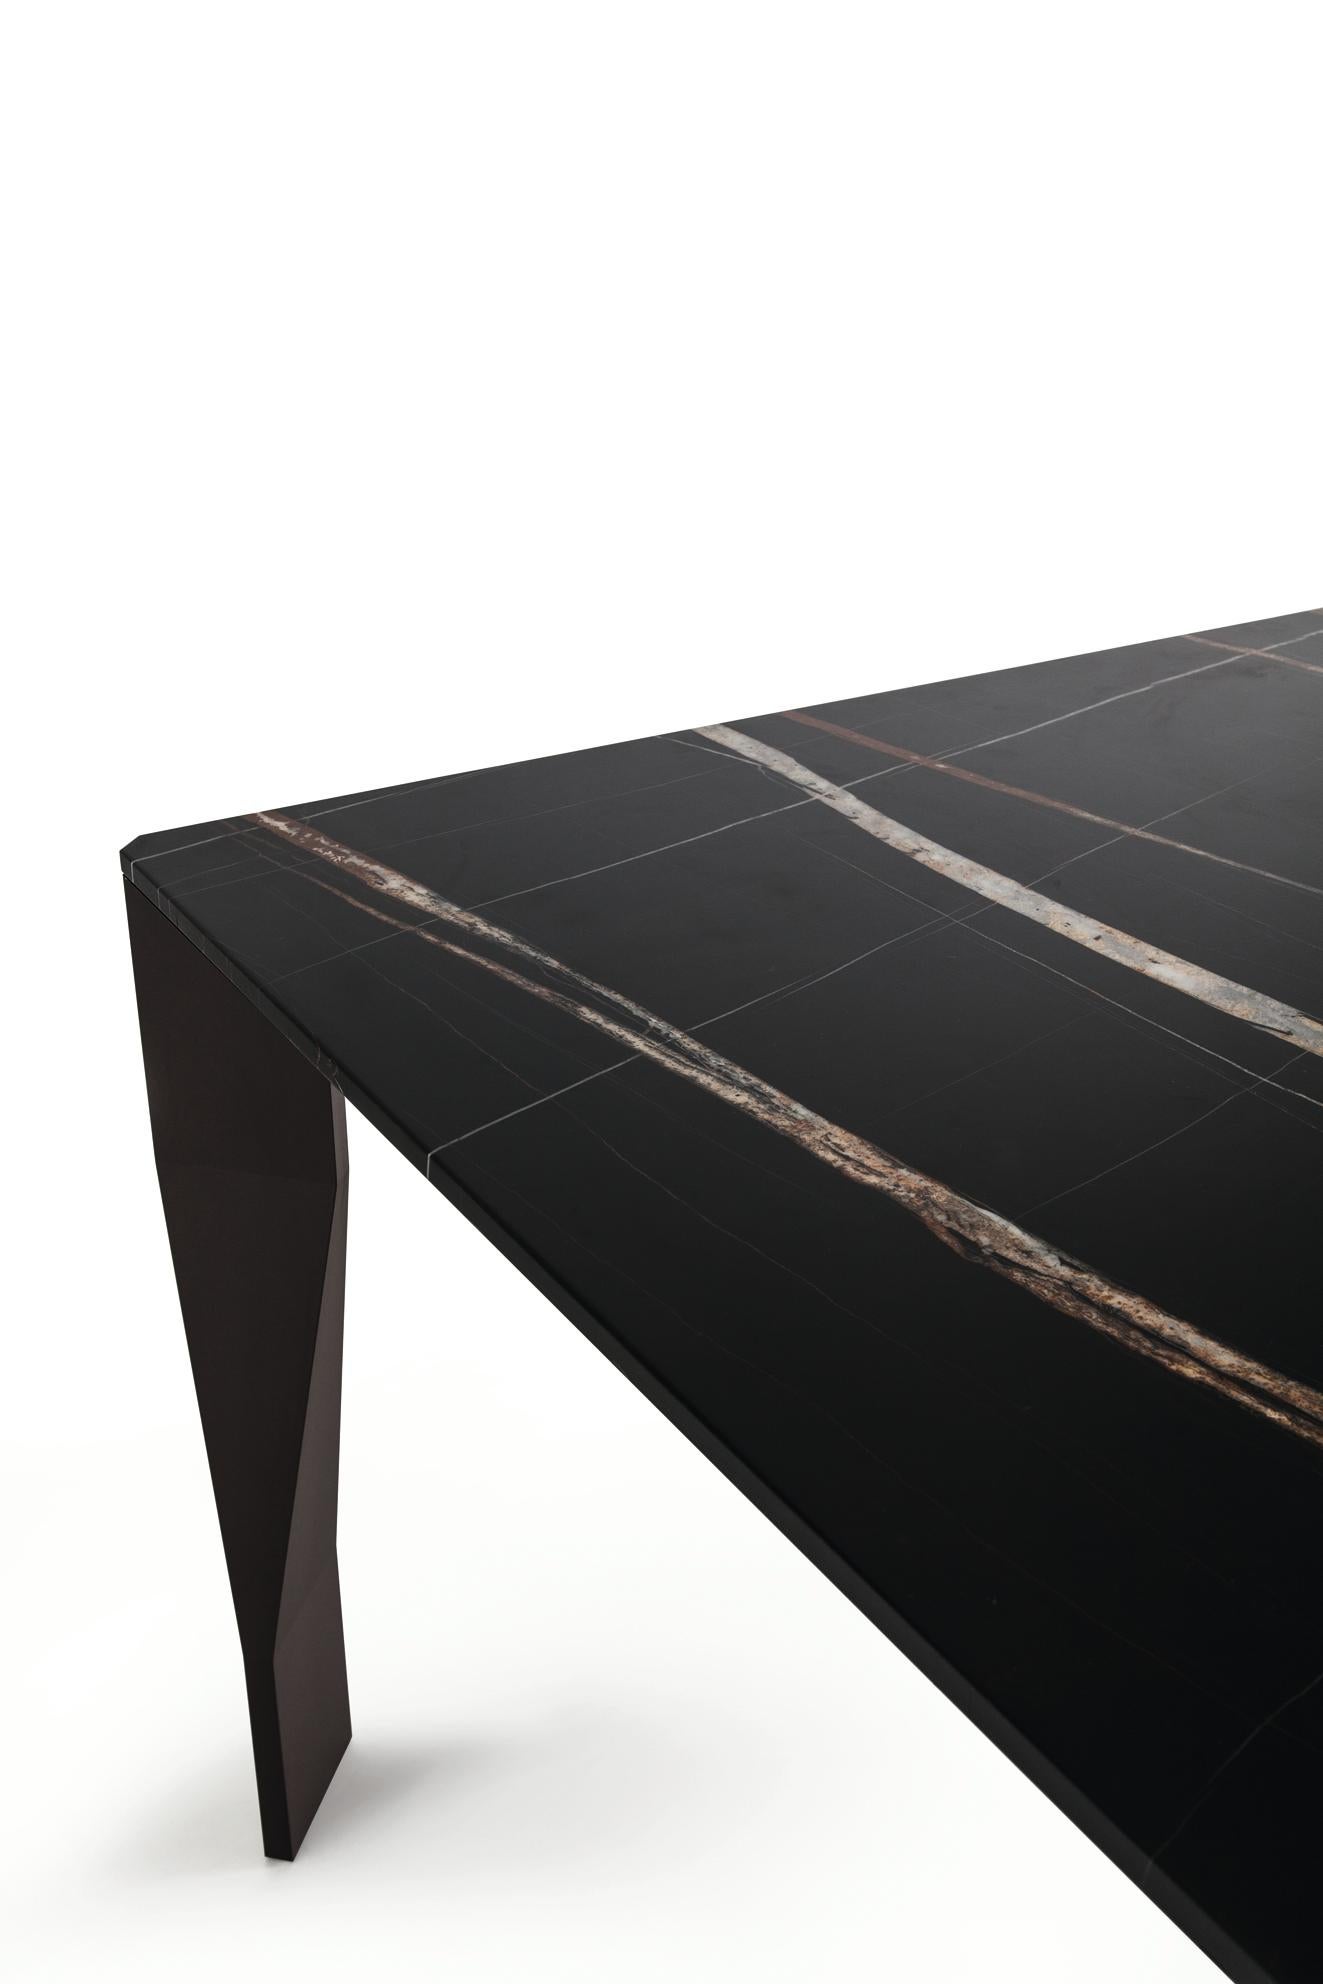 Eleganter Tisch mit Strukturelementen, die dem Volumen Leichtigkeit und Nüchternheit verleihen; der für die Arbeitsplatten verwendete Marmor gestaltet die Proportionen elegant neu. 
Der Diamond-Tisch ist das perfekte fehlende Stück für Ihr